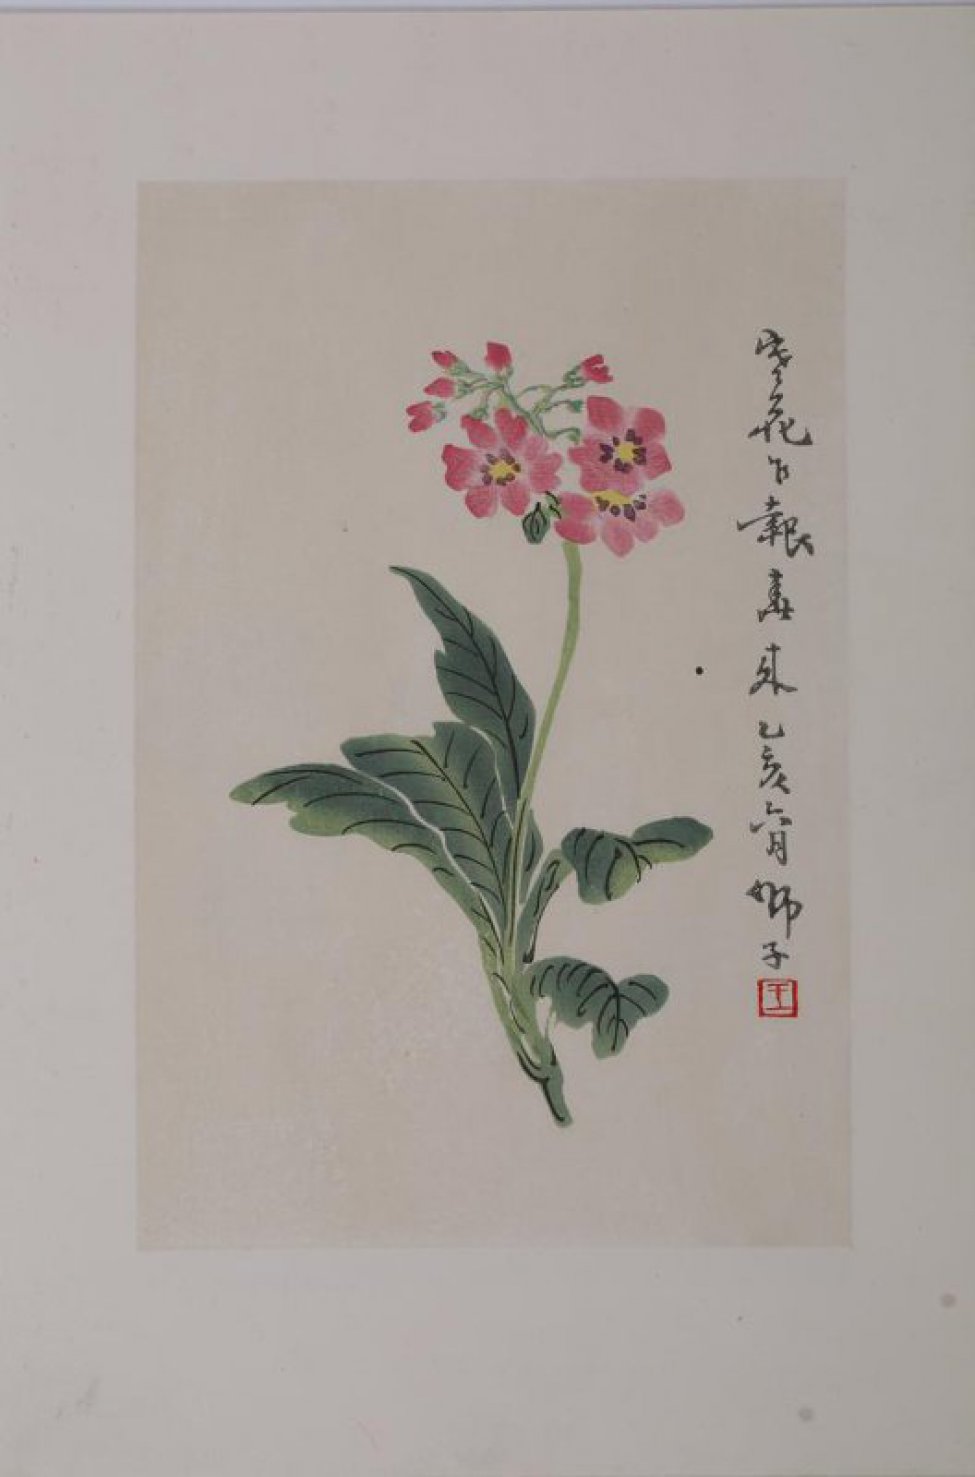 Изображен цветок с узкими длинными листьями,на зеленом стебле розовые мелкие цветы с желтой серцевинкой и бутоны. Справа 10 иероглифов.